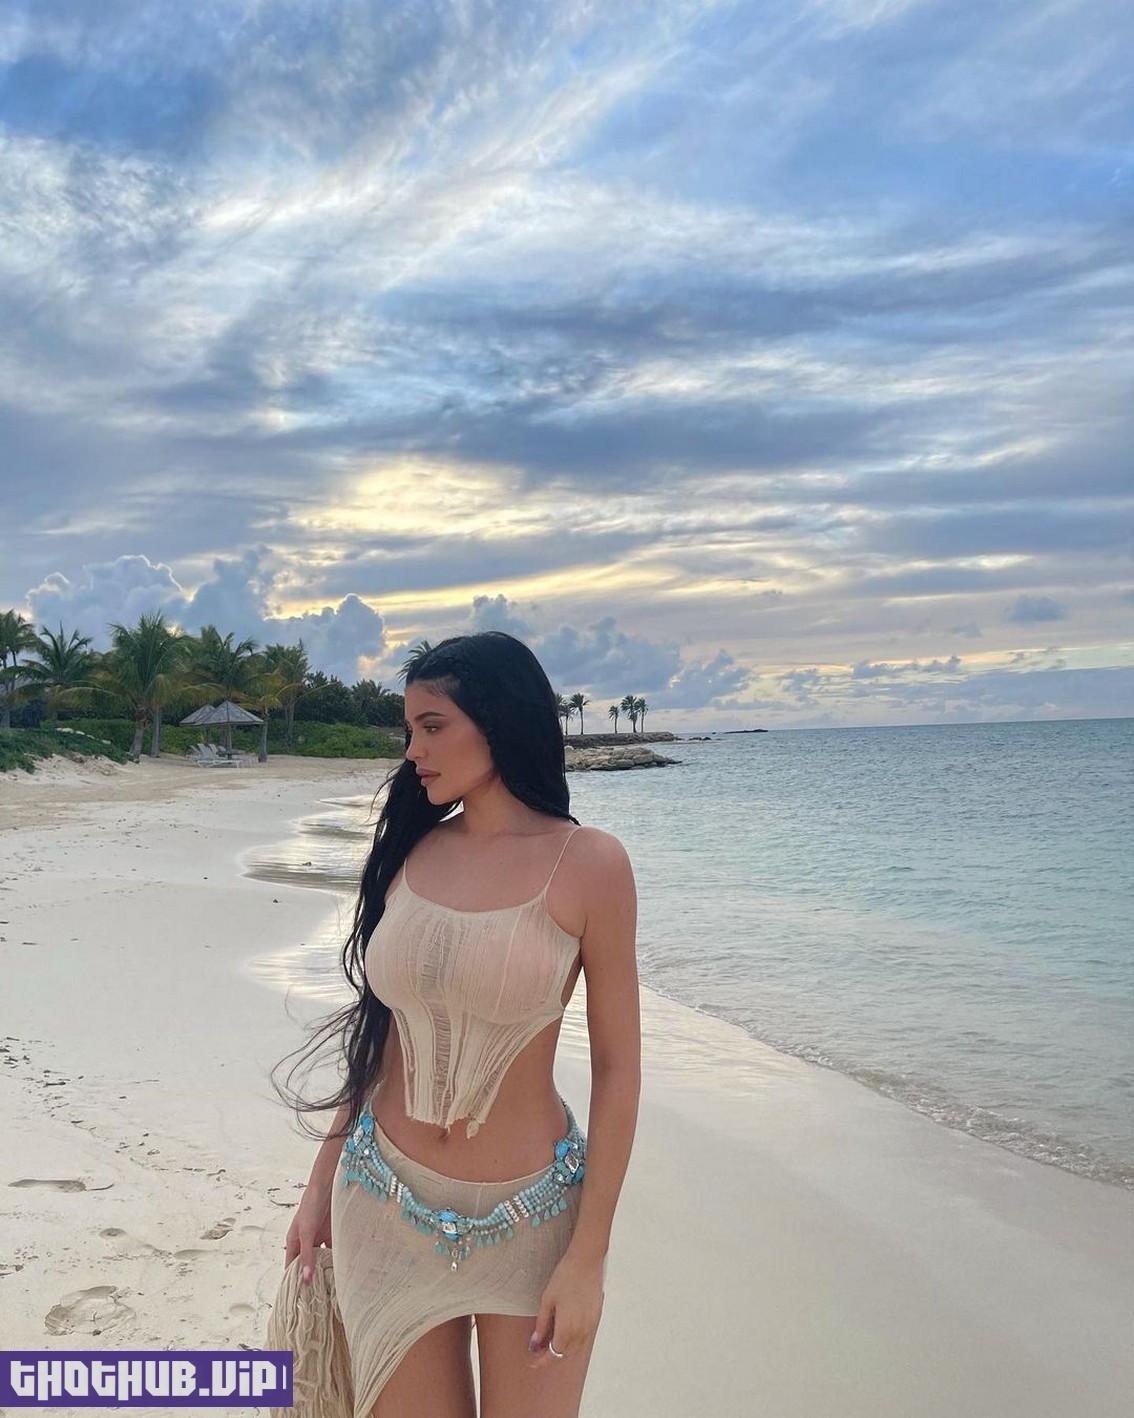 Kylie Jenner Sexy On The Beach 2 Photos